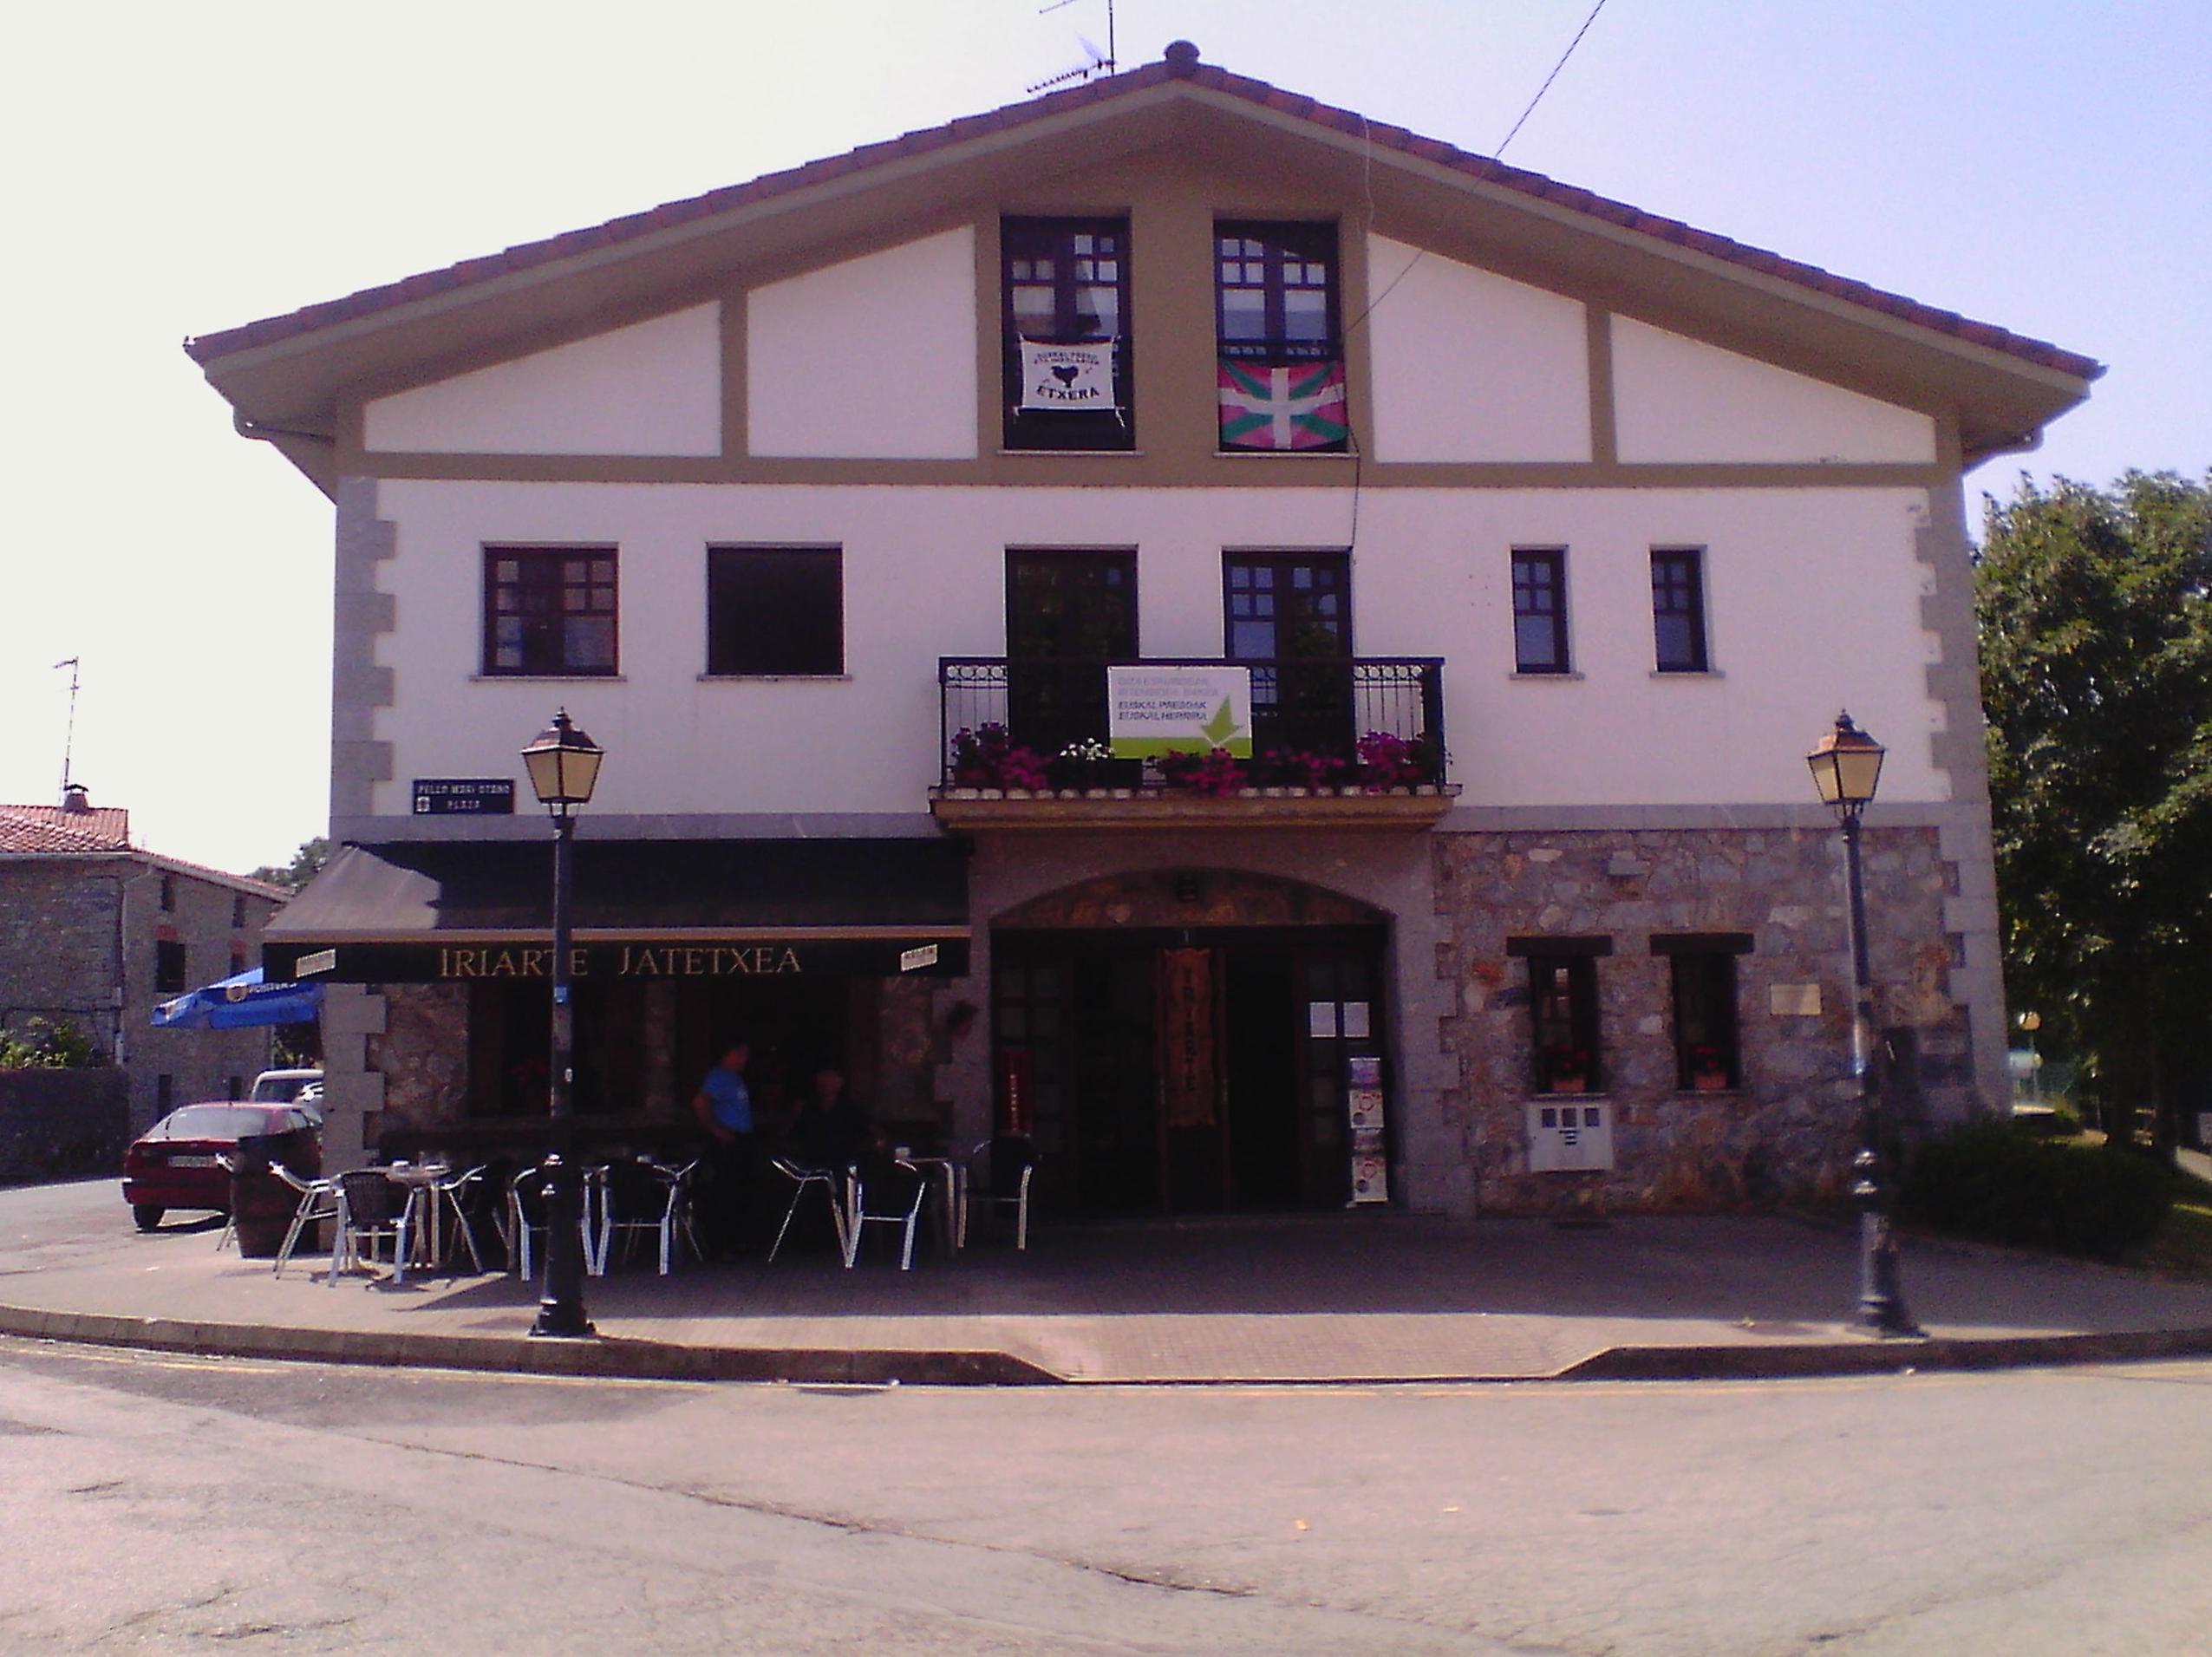 Restaurante Iriarte